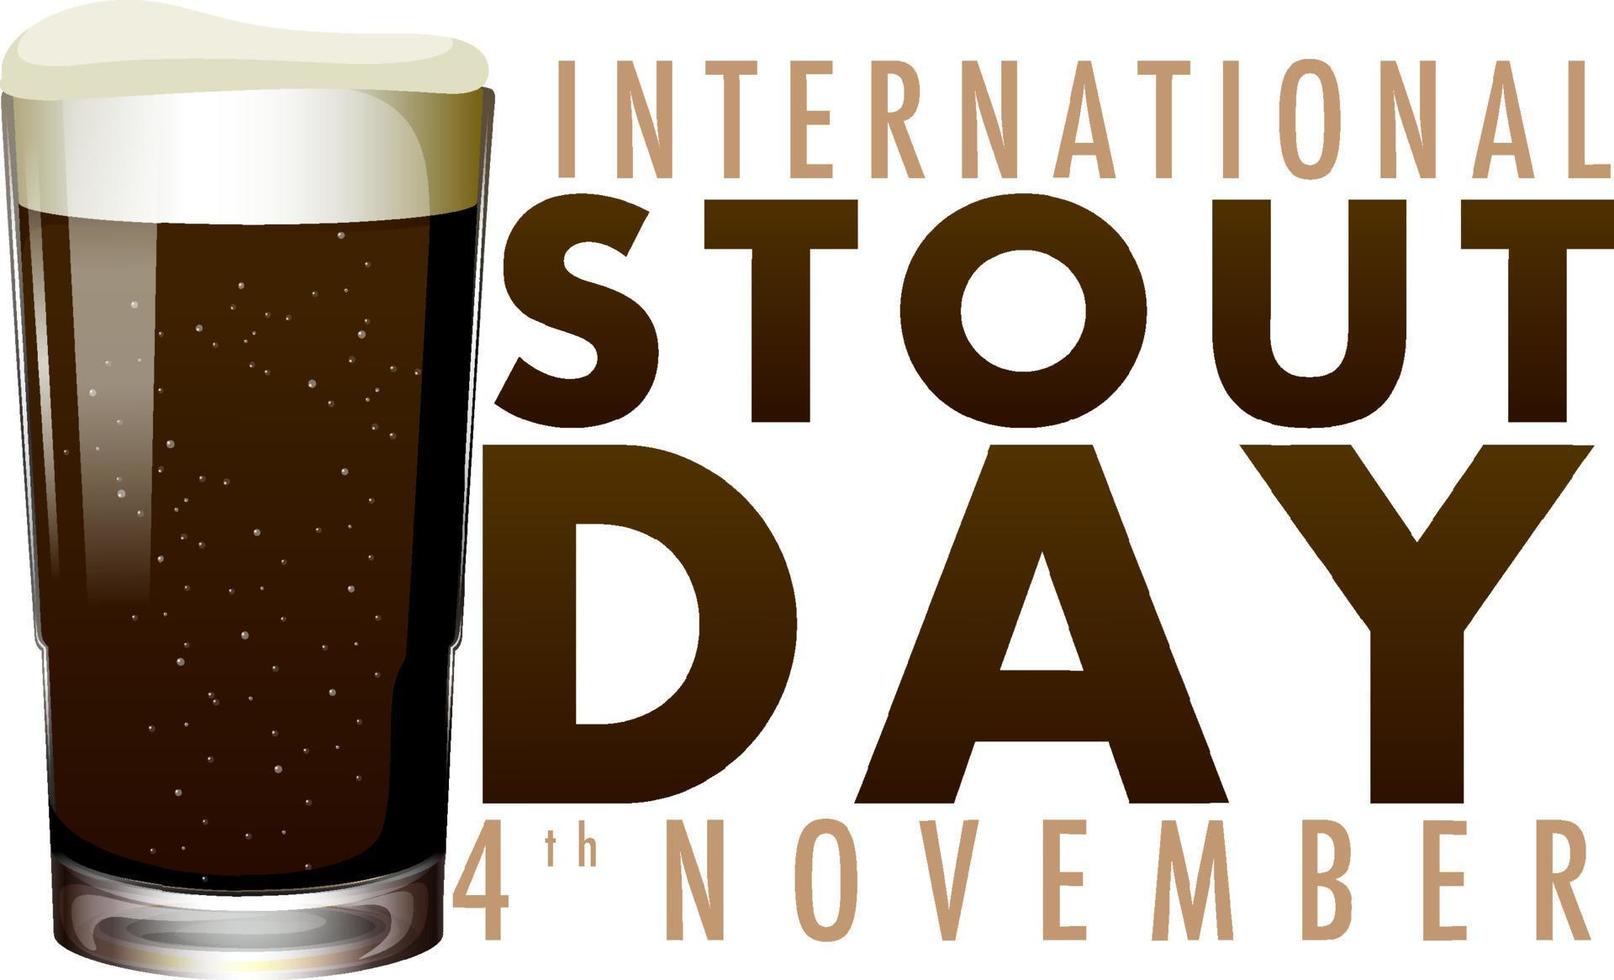 diseño de banner del día internacional de la cerveza fuerte vector